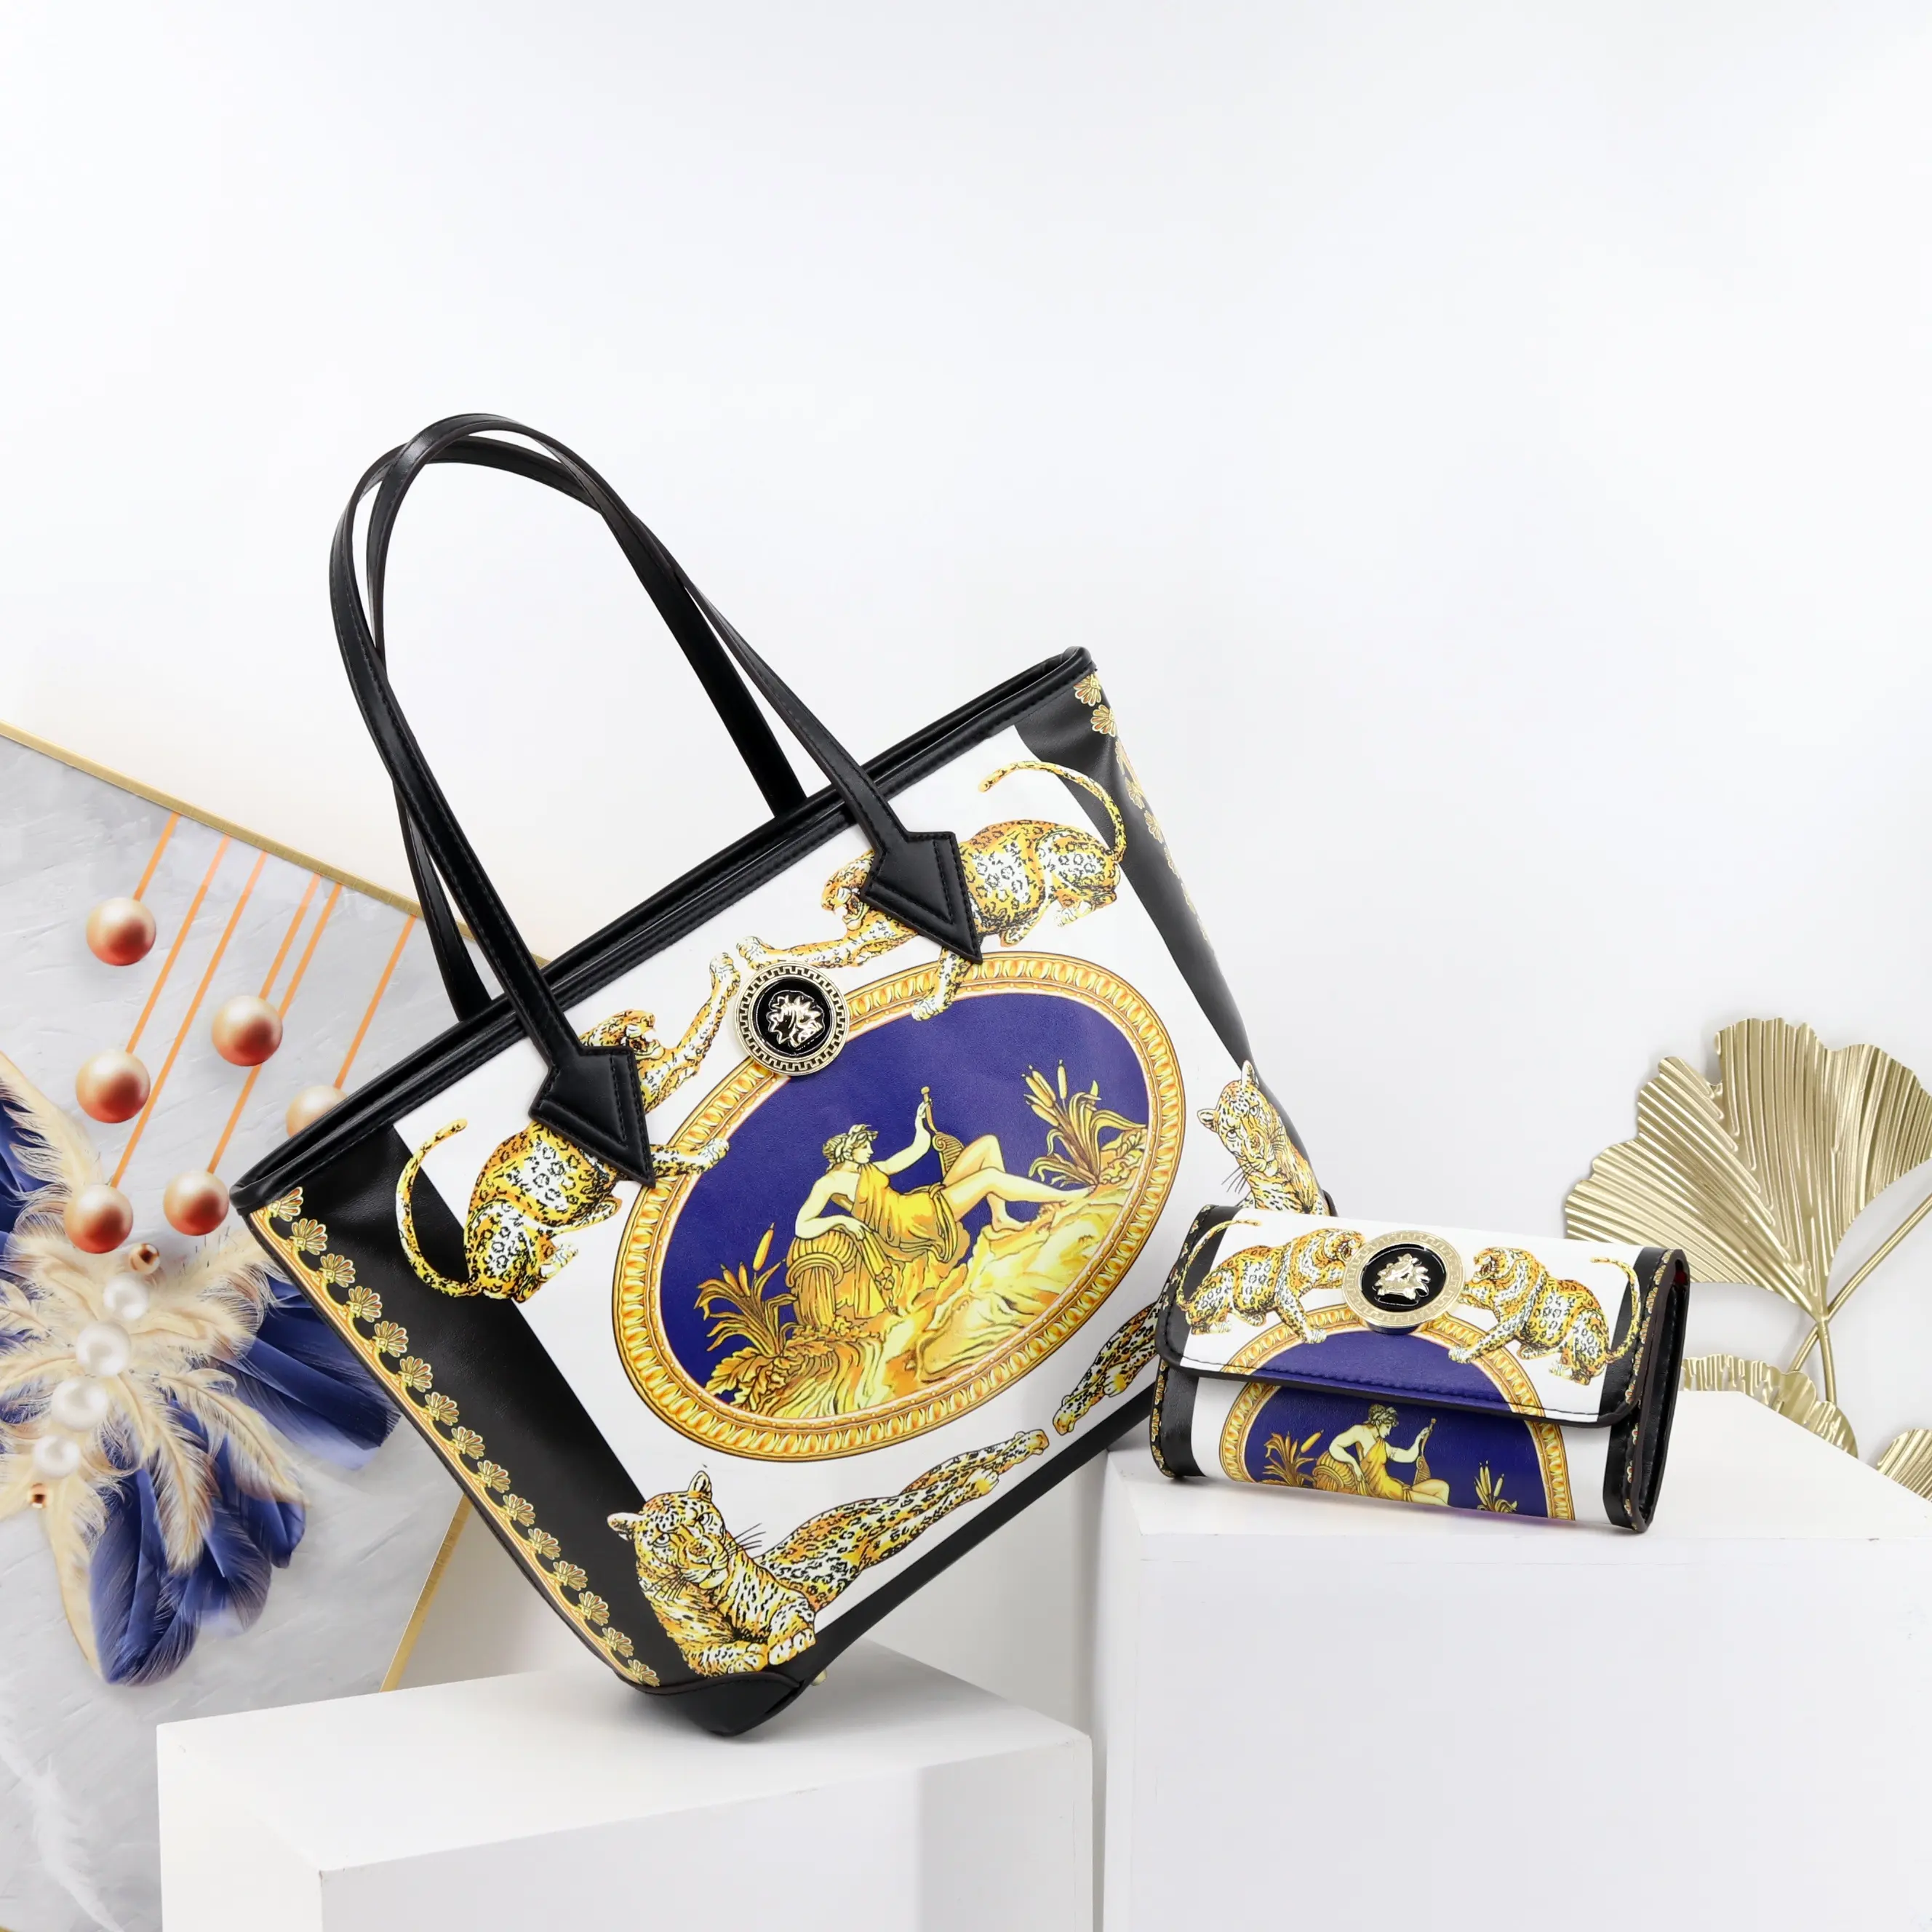 Hochwertige Mode-Tragetaschen-Sets für Frauen Luxus-Designer-Taschen für Damen Berühmte Marken, die Einkaufstaschen für Mädchen drucken